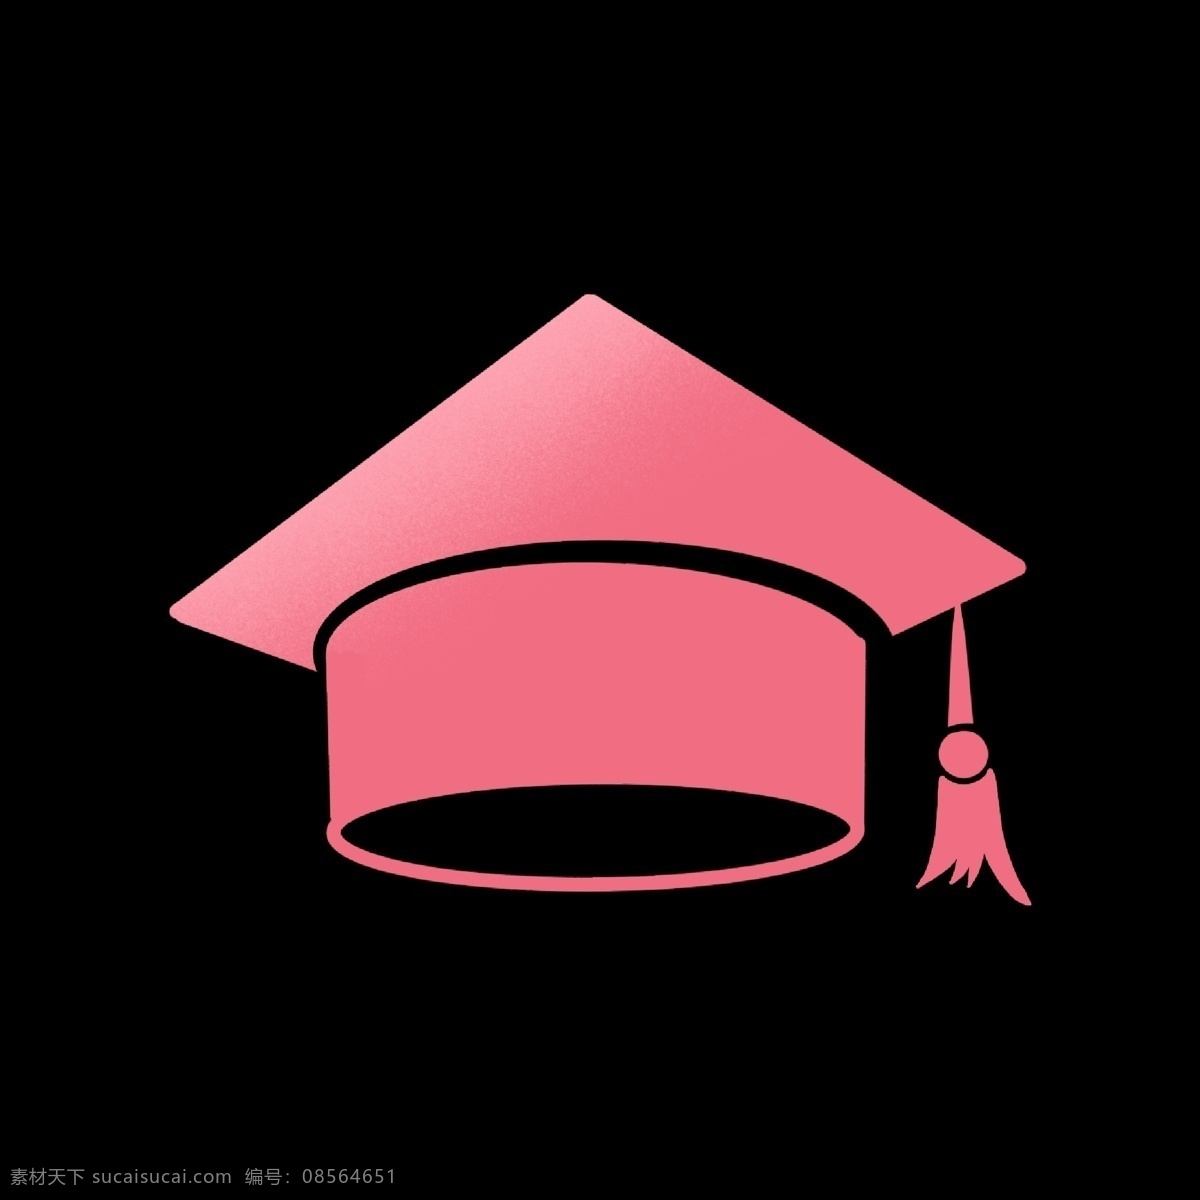 粉色 博士帽 简历 图标 硕士帽服 渐变 暖色 学历 文化程度 知识水平 简洁 抽象 卡通 ppt使用 名片使用 简历表专用